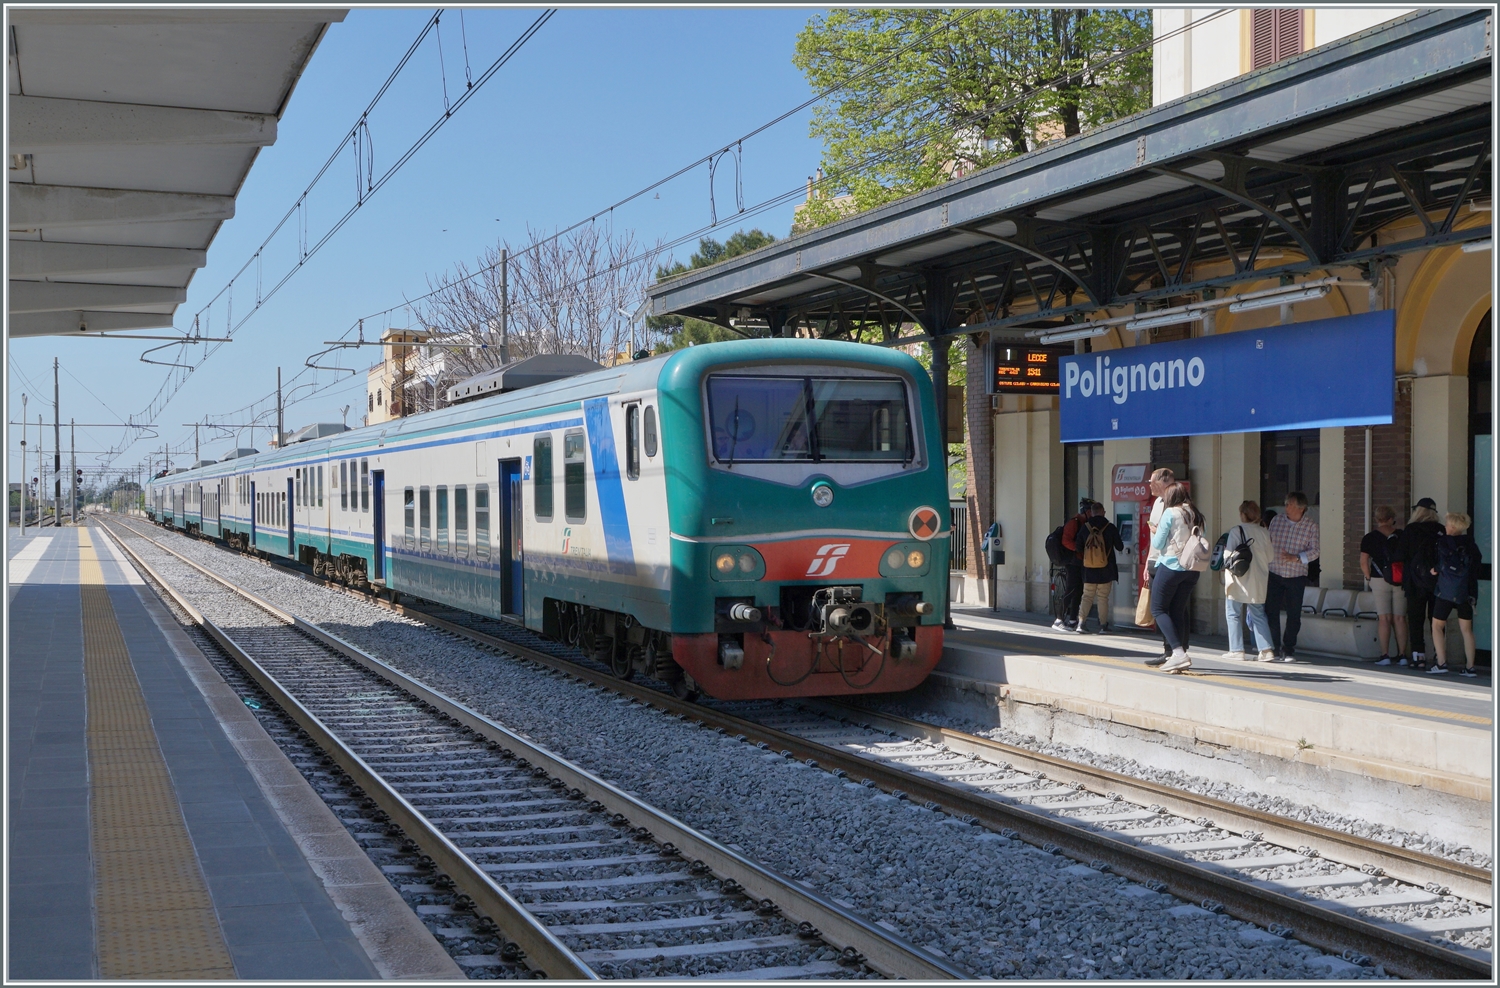 Der FS Trenitalia Regionalzug 4413 von Bari nach Lecce erreicht Polignano A Mare. Trotz der vielen neuen Fahrzeuge sind hin und wieder weiterhin älter Züge im Einsatz, wo wie dieser FS Tpy 73 Niederflurzug (Carrozza vicinale a piano ribassato) in XMPR Lackierung mit einem npBD an der Spitze und vier nB Wagen sowie der schiebenden FS Trenitalia E 464 123. 

22. April 2023